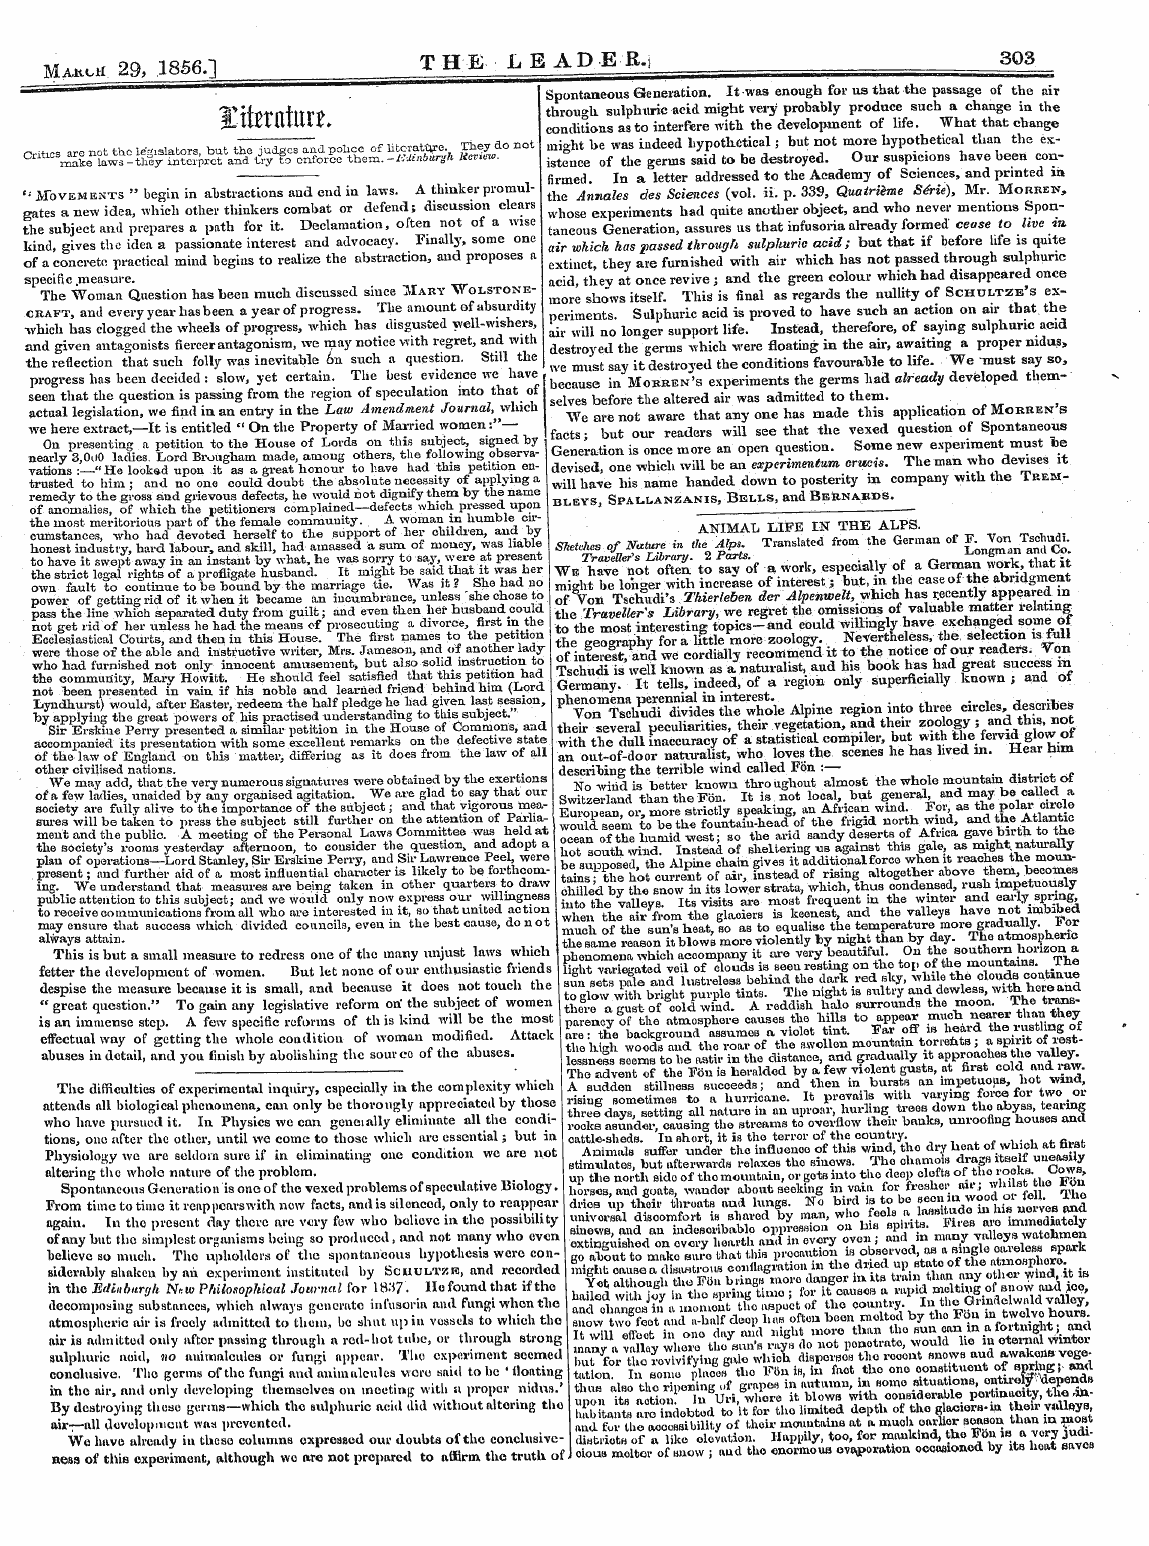 Leader (1850-1860): jS F Y, 2nd edition - Miutch. 29, 1856.]